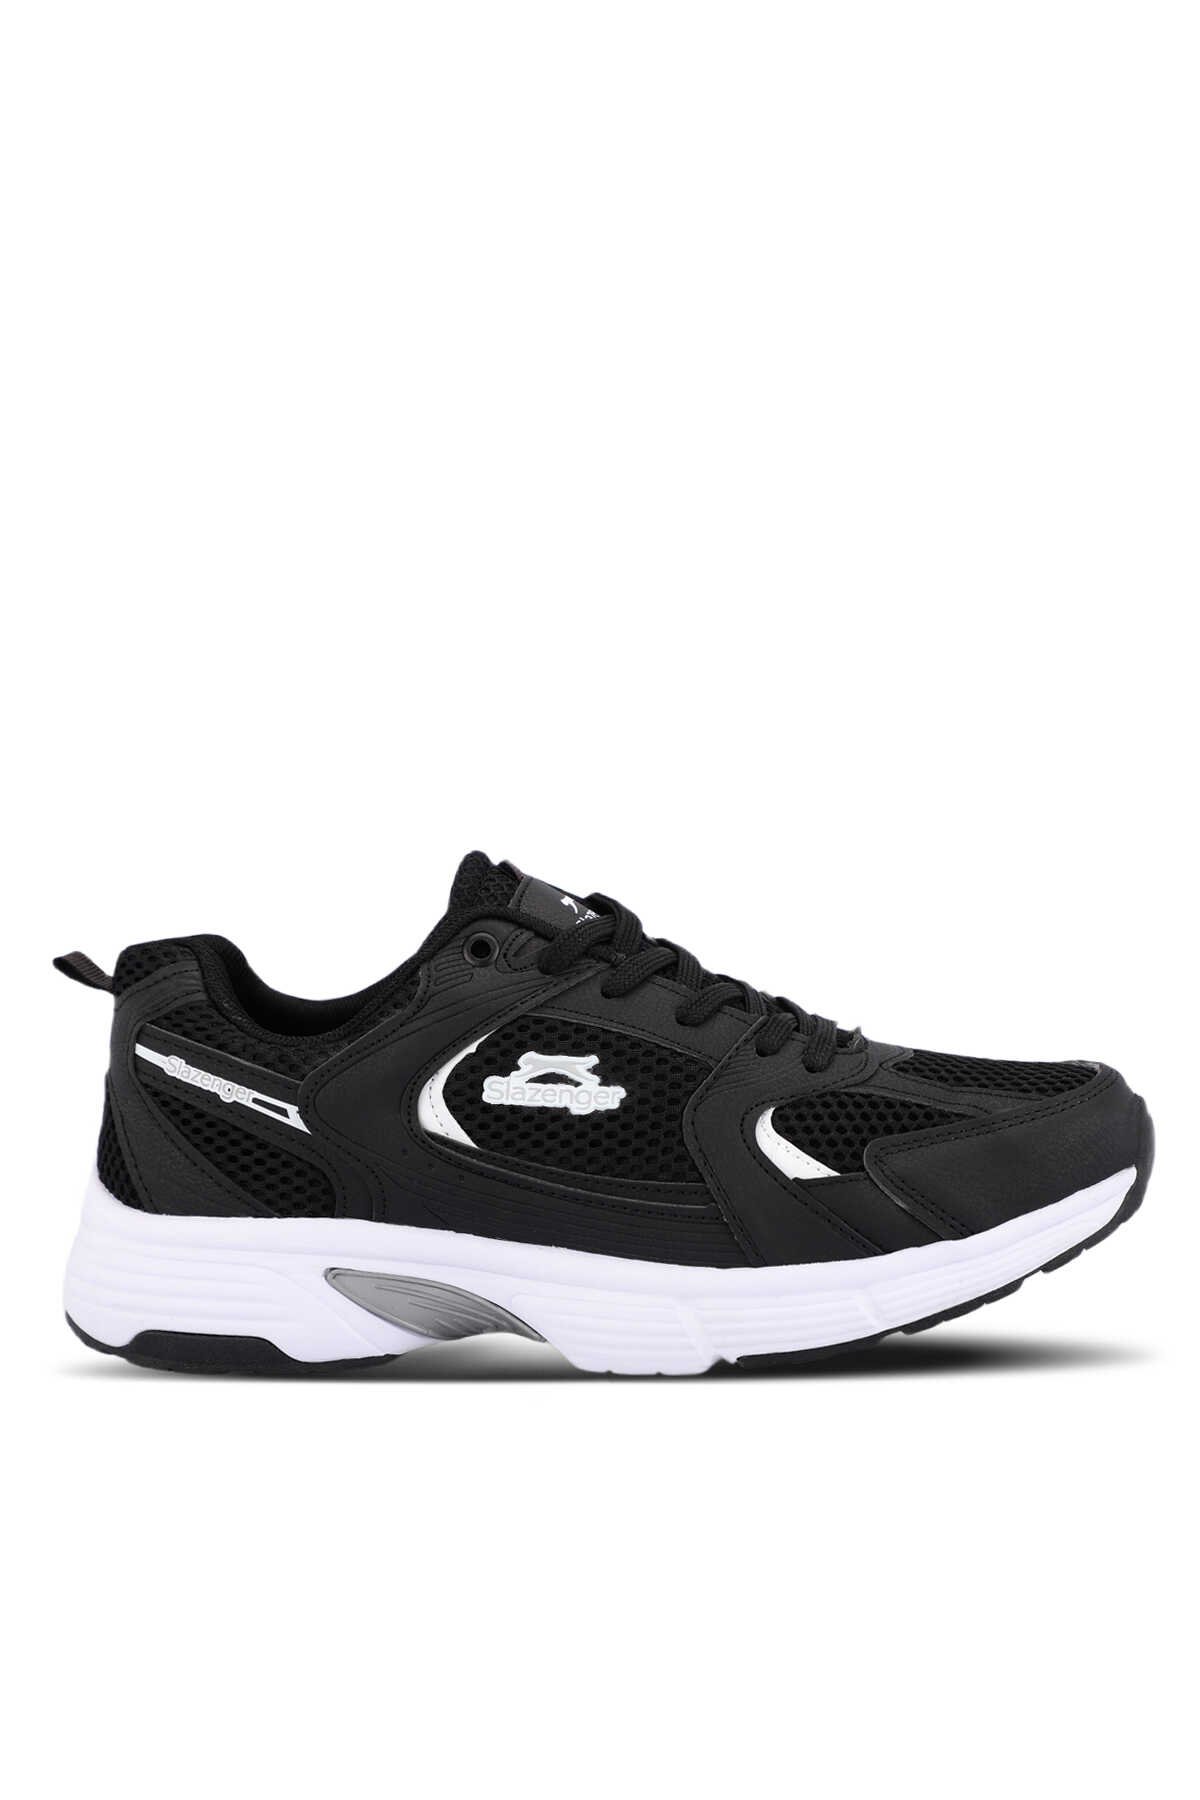 Slazenger - Slazenger ZANESTI Erkek Sneaker Ayakkabı Siyah / Beyaz